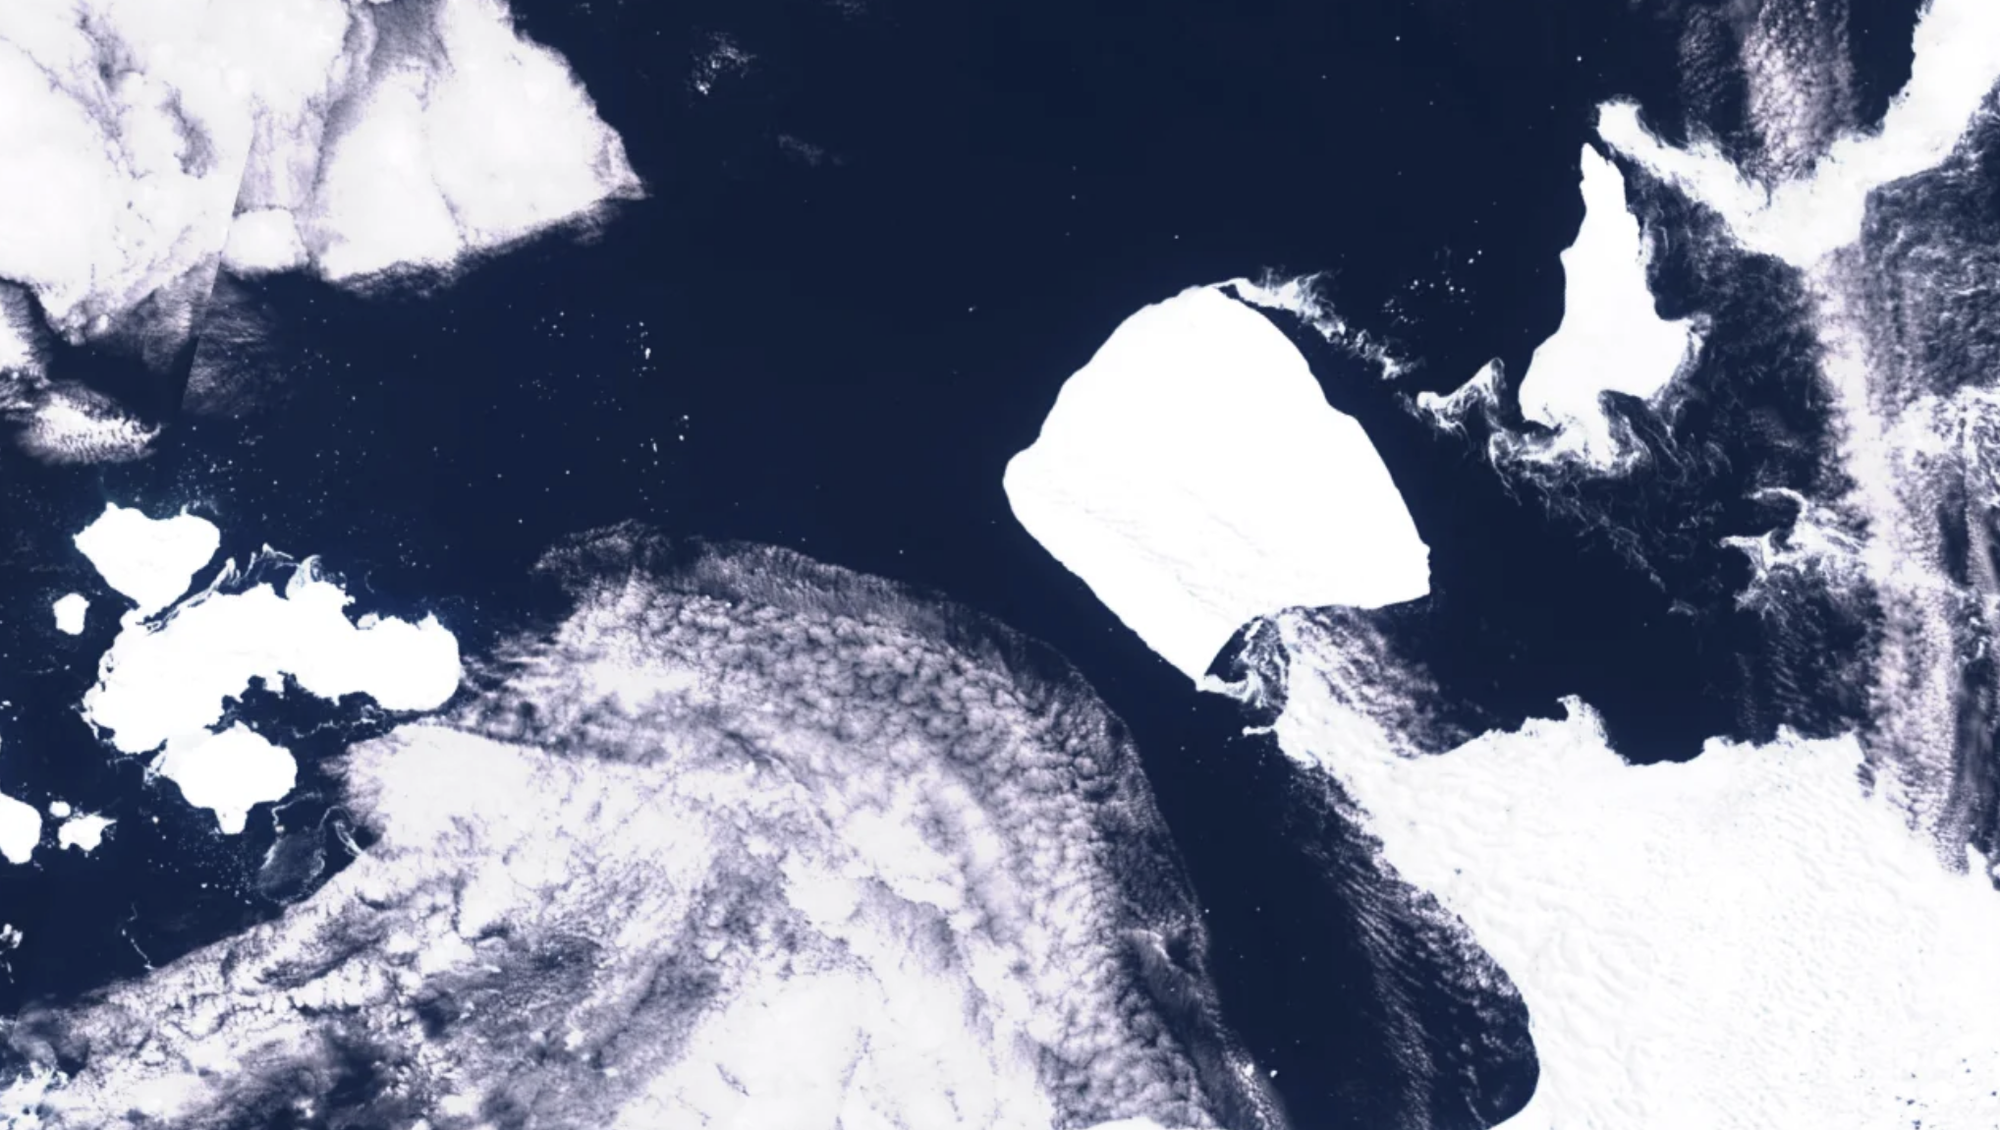 Tảng băng trôi lớn gấp 3 thành phố New York dịch chuyển khiến các nhà khoa học lo sợ - Ảnh 1.